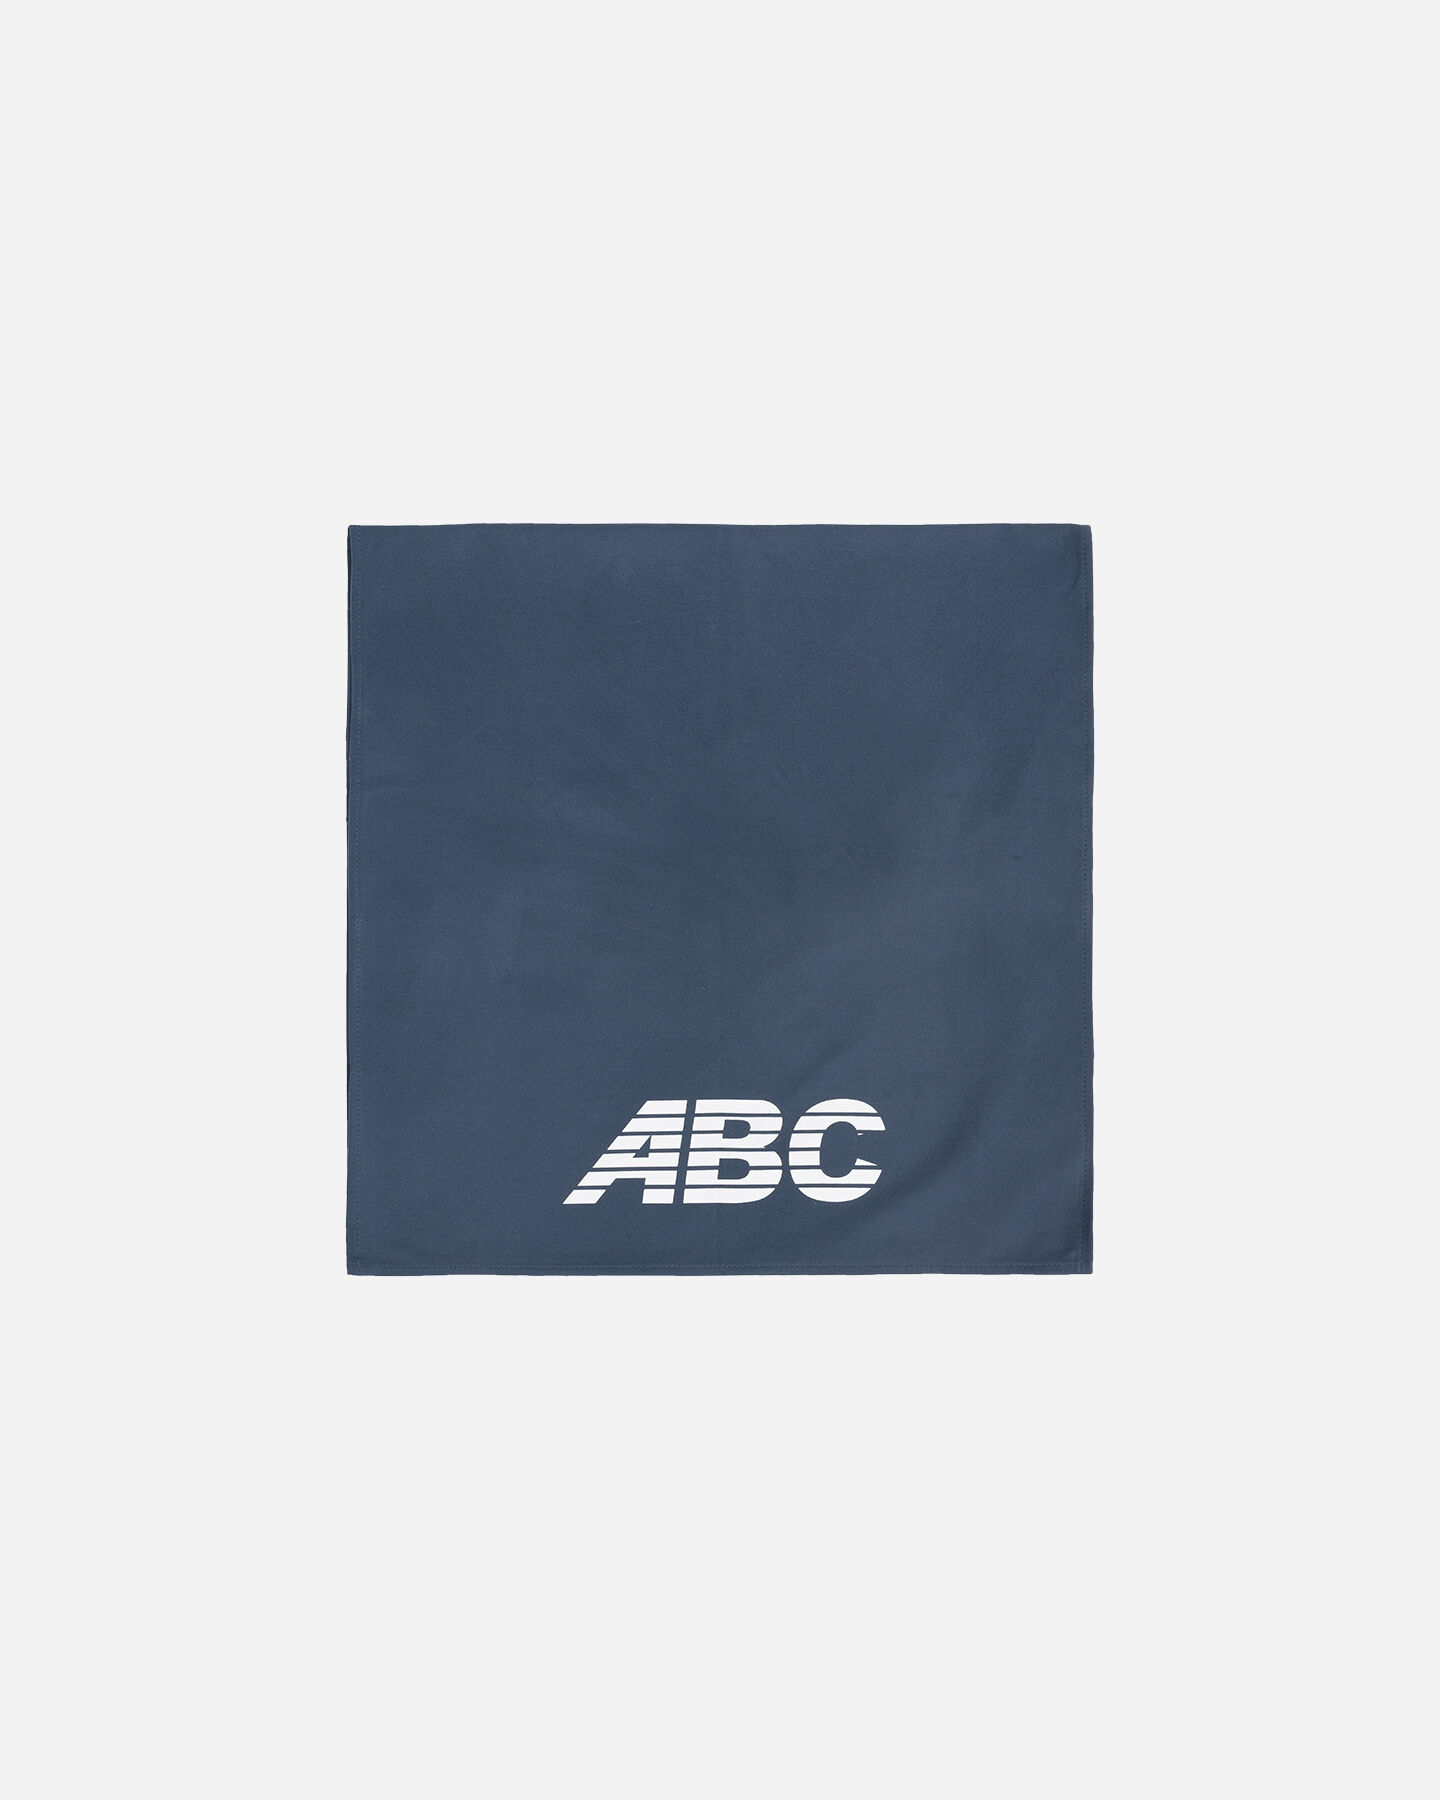  Telo ABC BASIC MICROFIBER 100X50 S4069031|519|UNI scatto 1